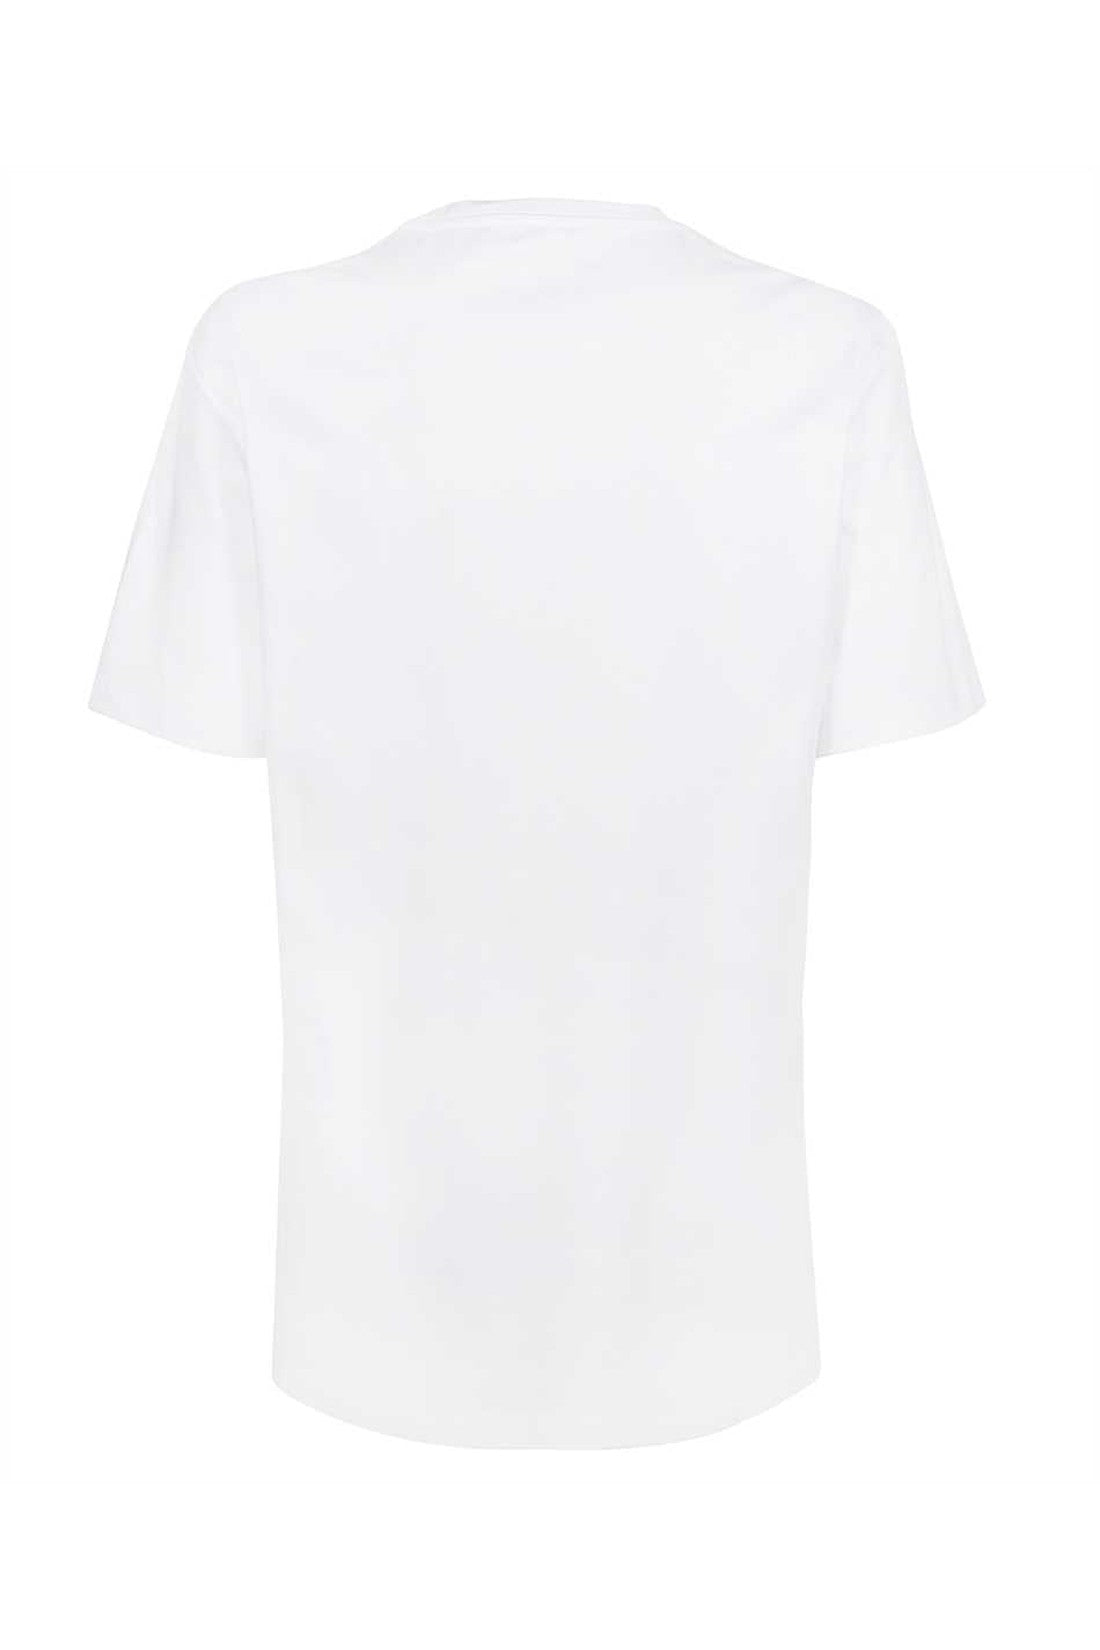 Logo crew-neck t-shirt-Versace-OUTLET-SALE-ARCHIVIST